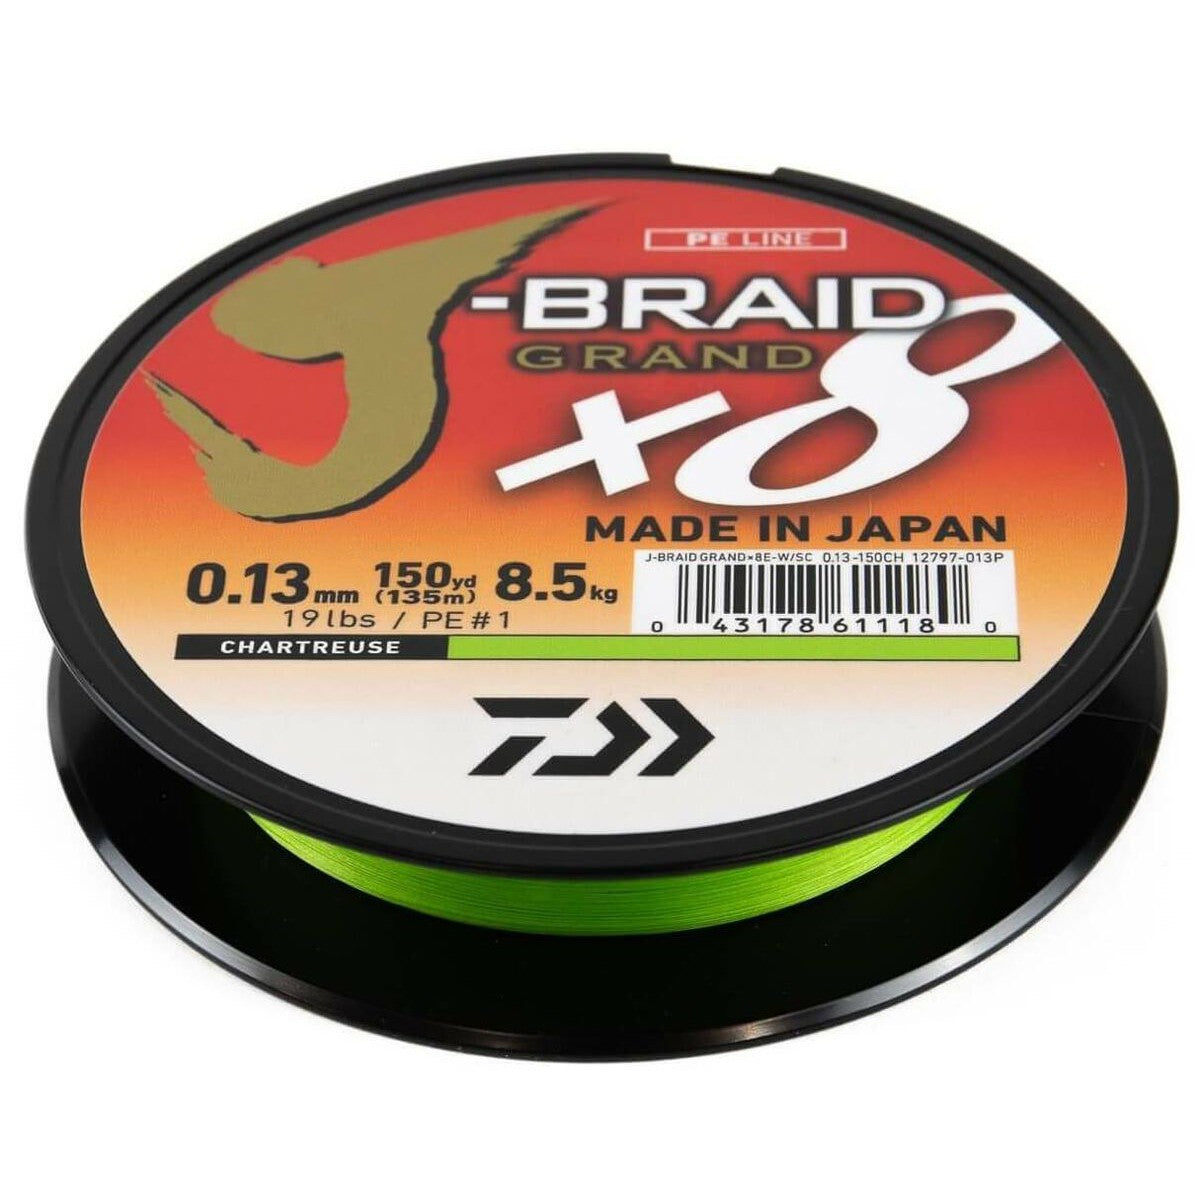 J-Braid Grand x8 Braided Fishing Line - 8 lb